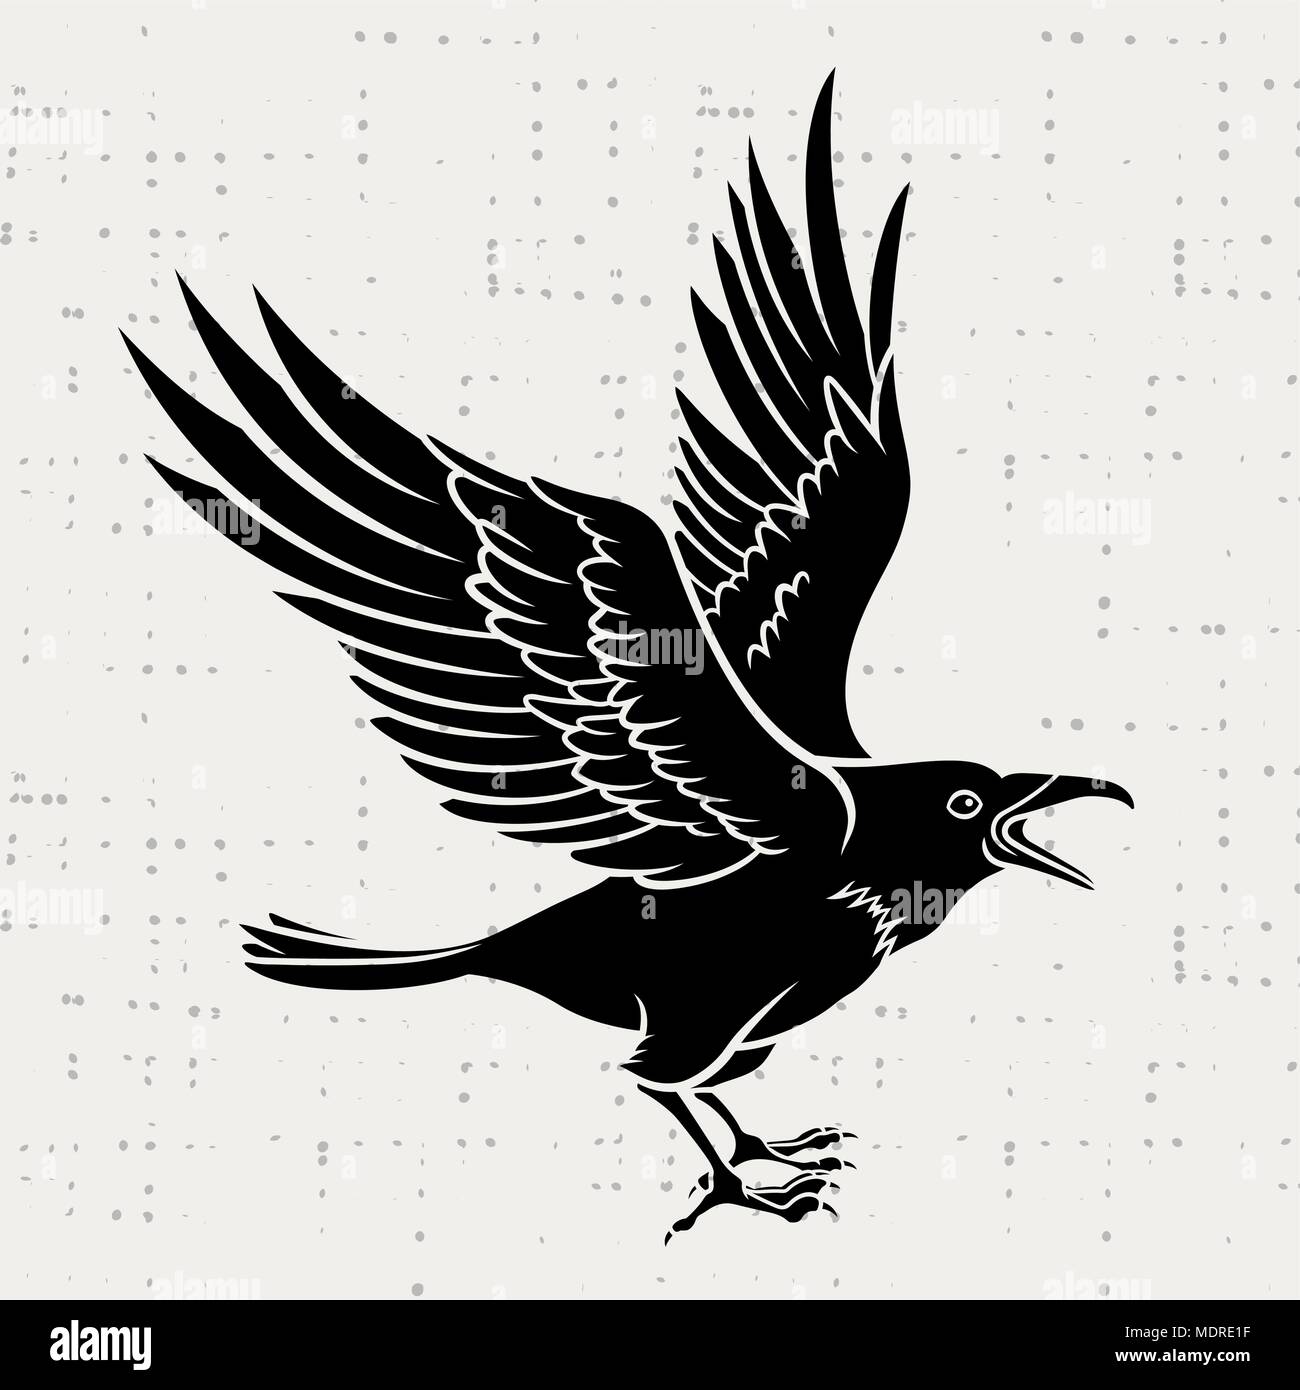 Vektor Silhouette einer Flying Black Raven auf grunge Hintergrund Stock Vektor